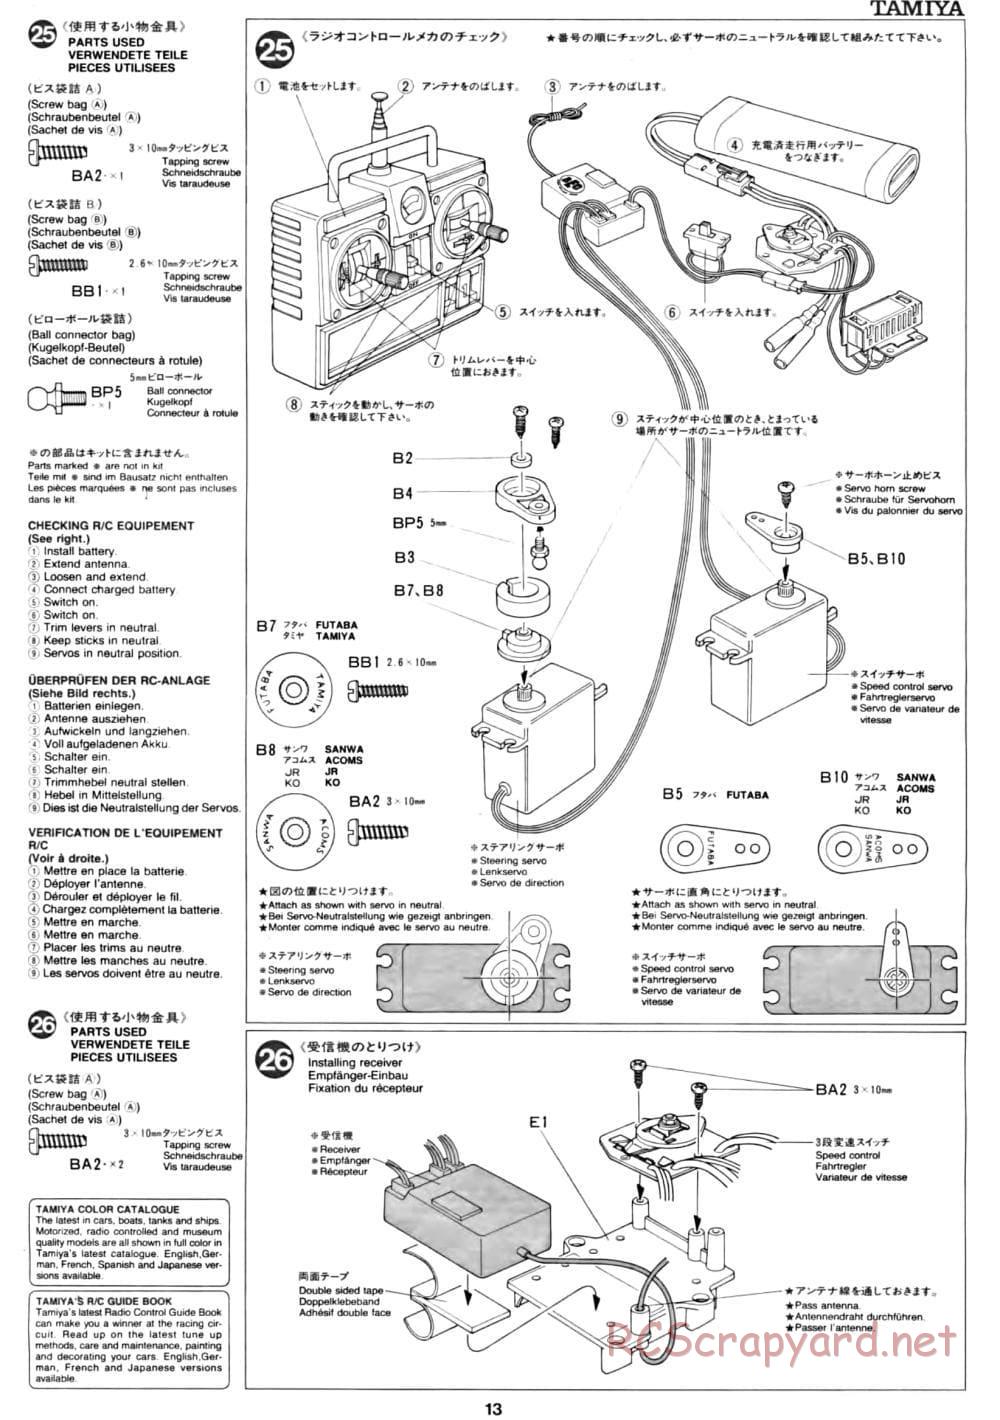 Tamiya - CC-01 Chassis - Manual - Page 13